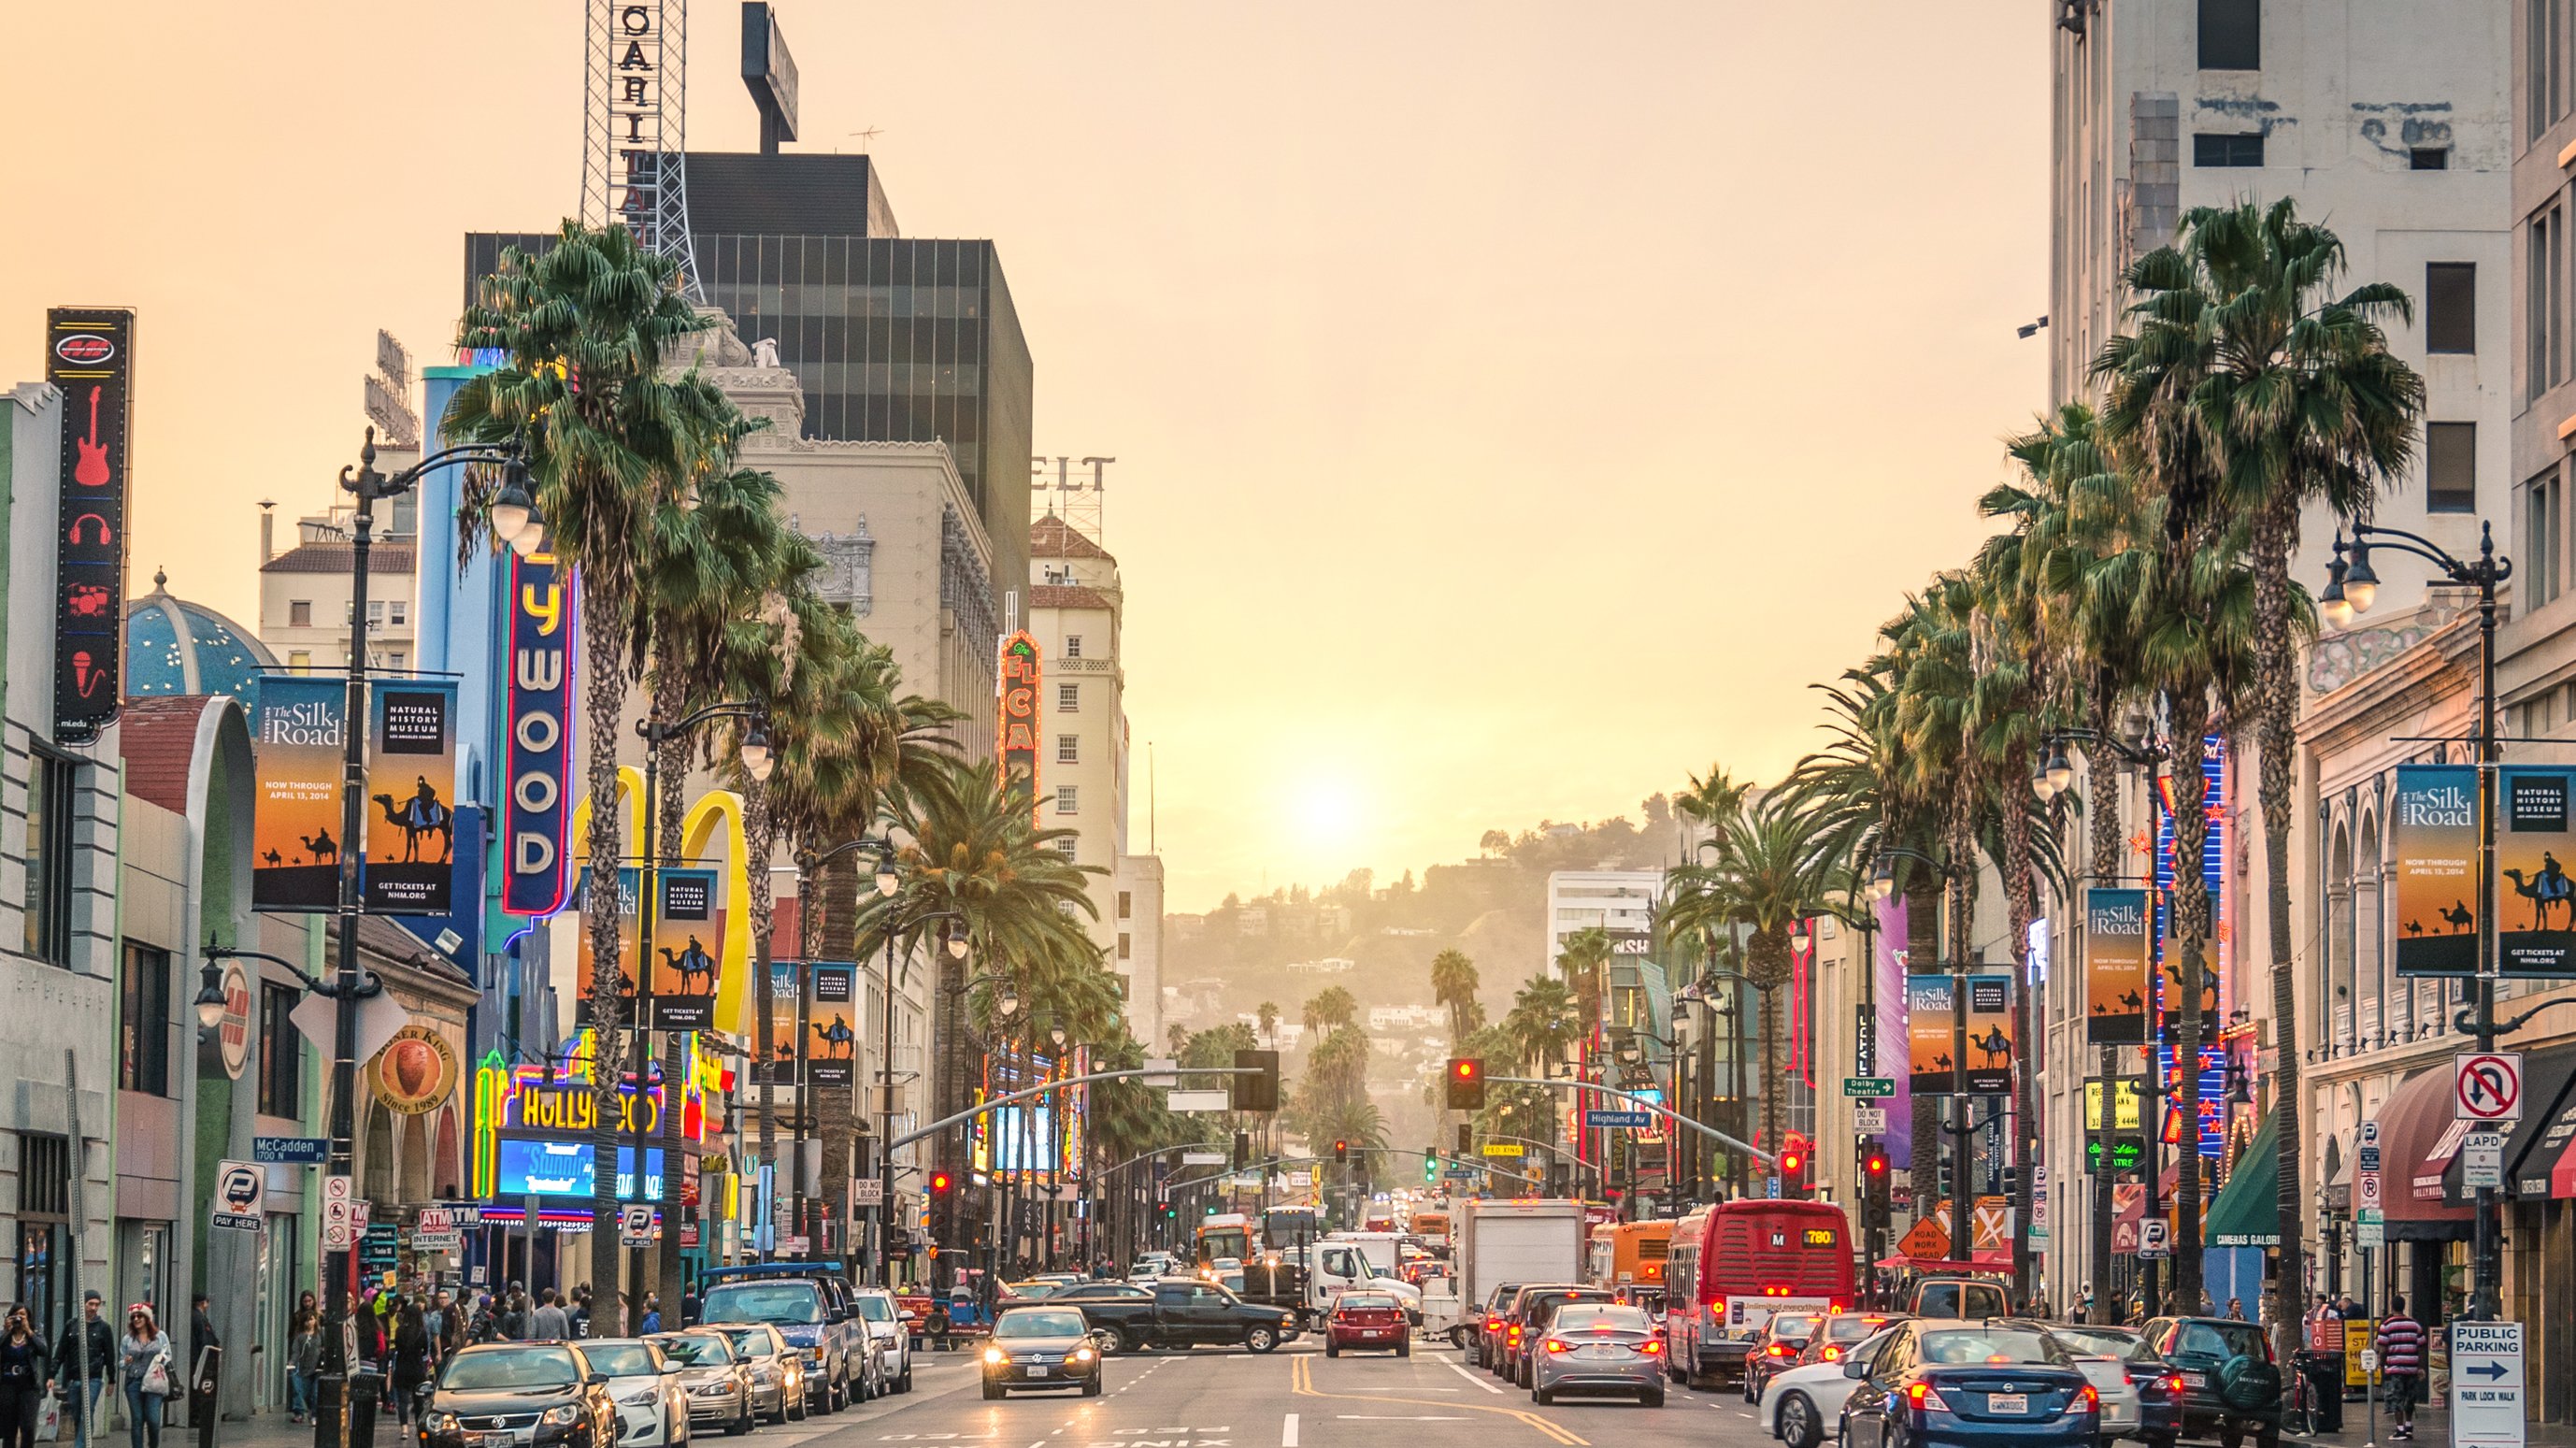 Índex das cidades com custo de vida mais elevado - Los Angeles